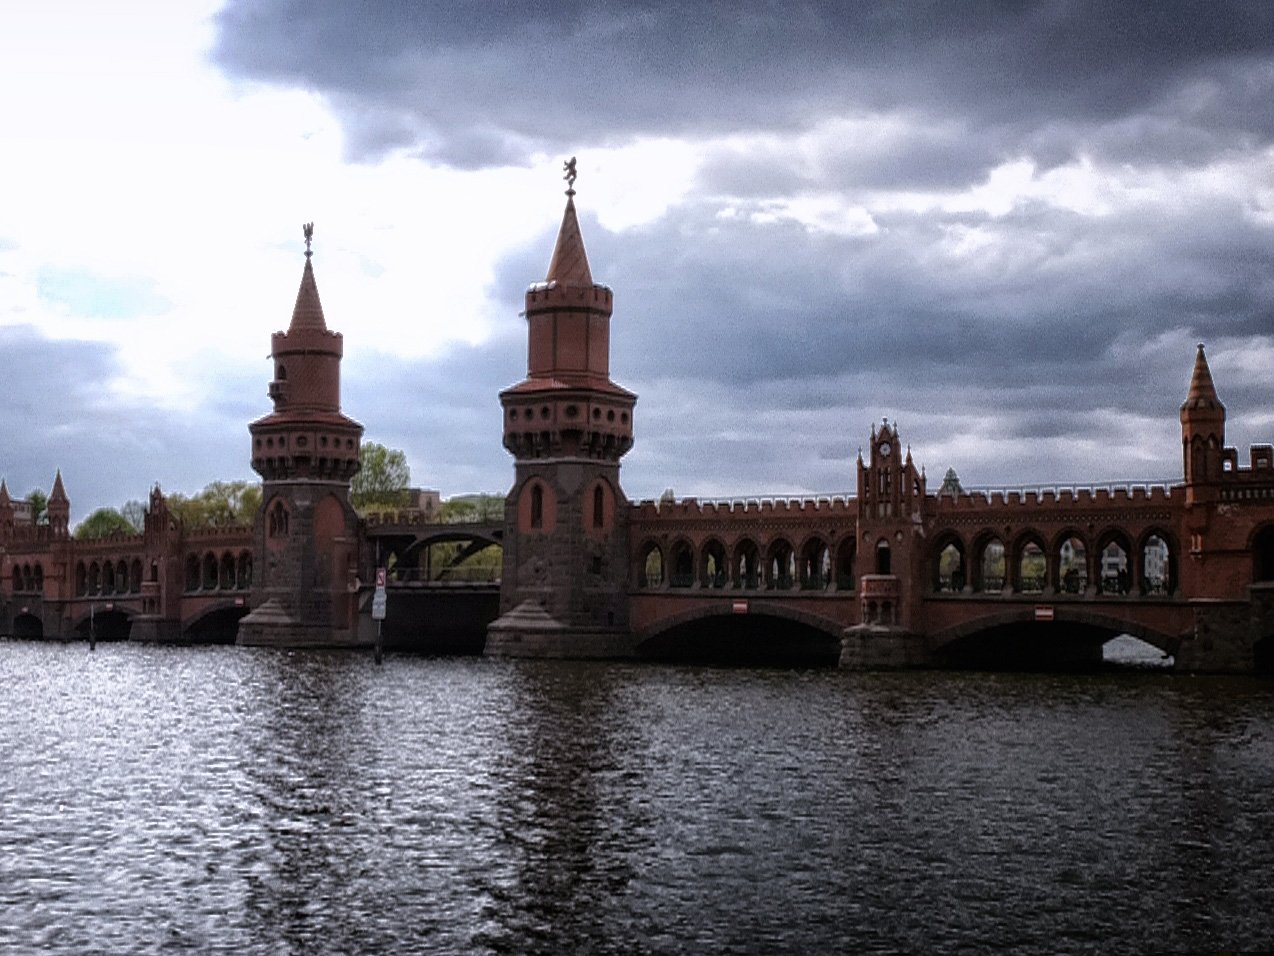 Die Oberbaumbrücke aus Backstein mit ihren zwei Türmen in Berlin an einem bewölkten Tag.